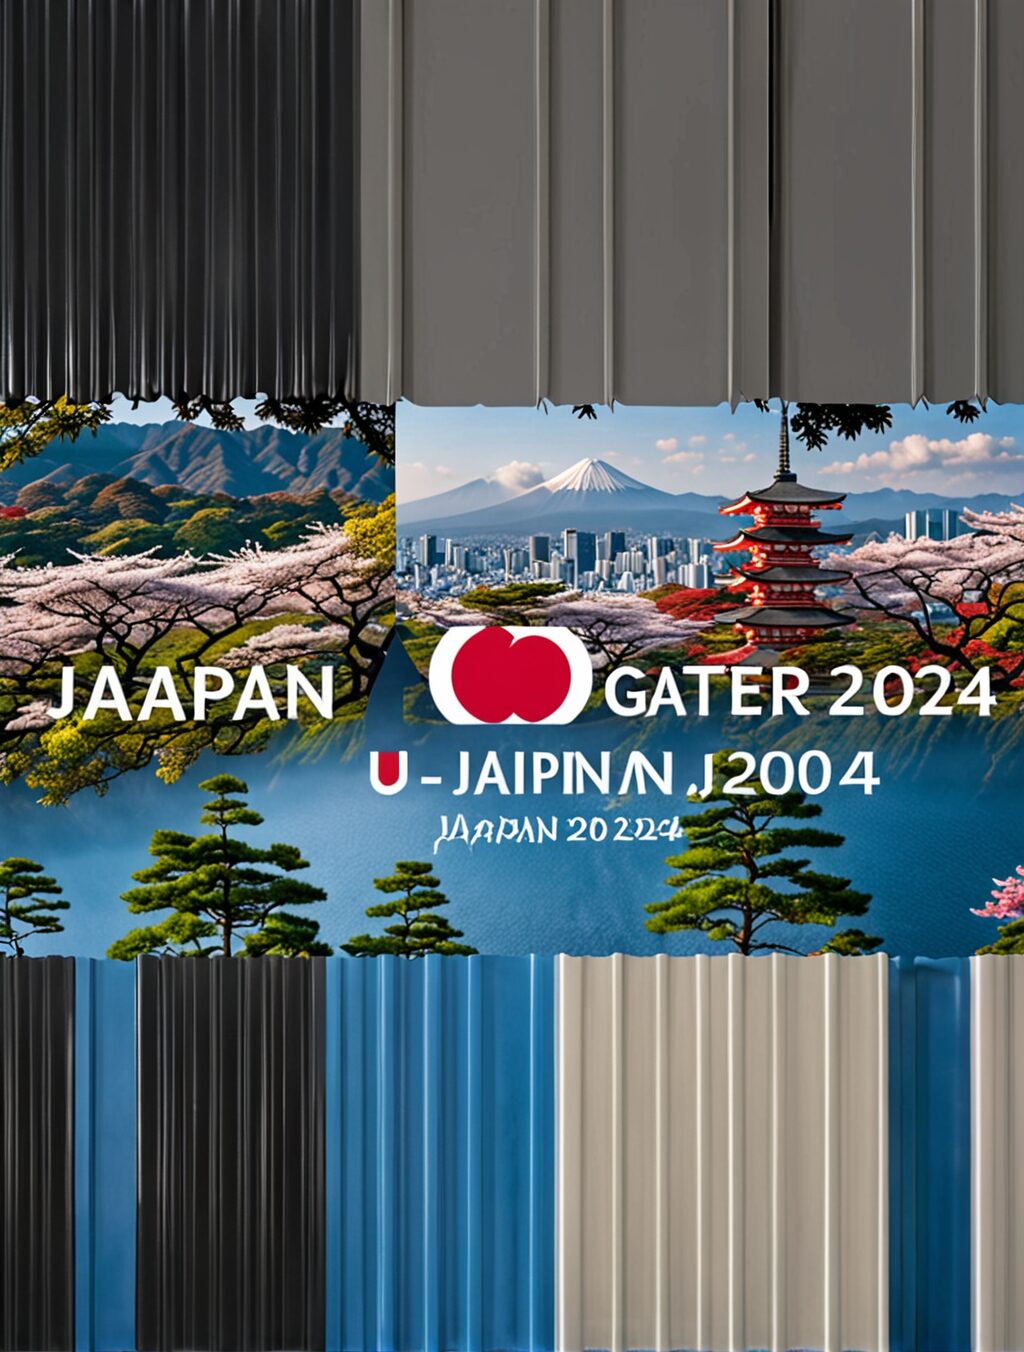 gate 1 travel japan 2024 schedule